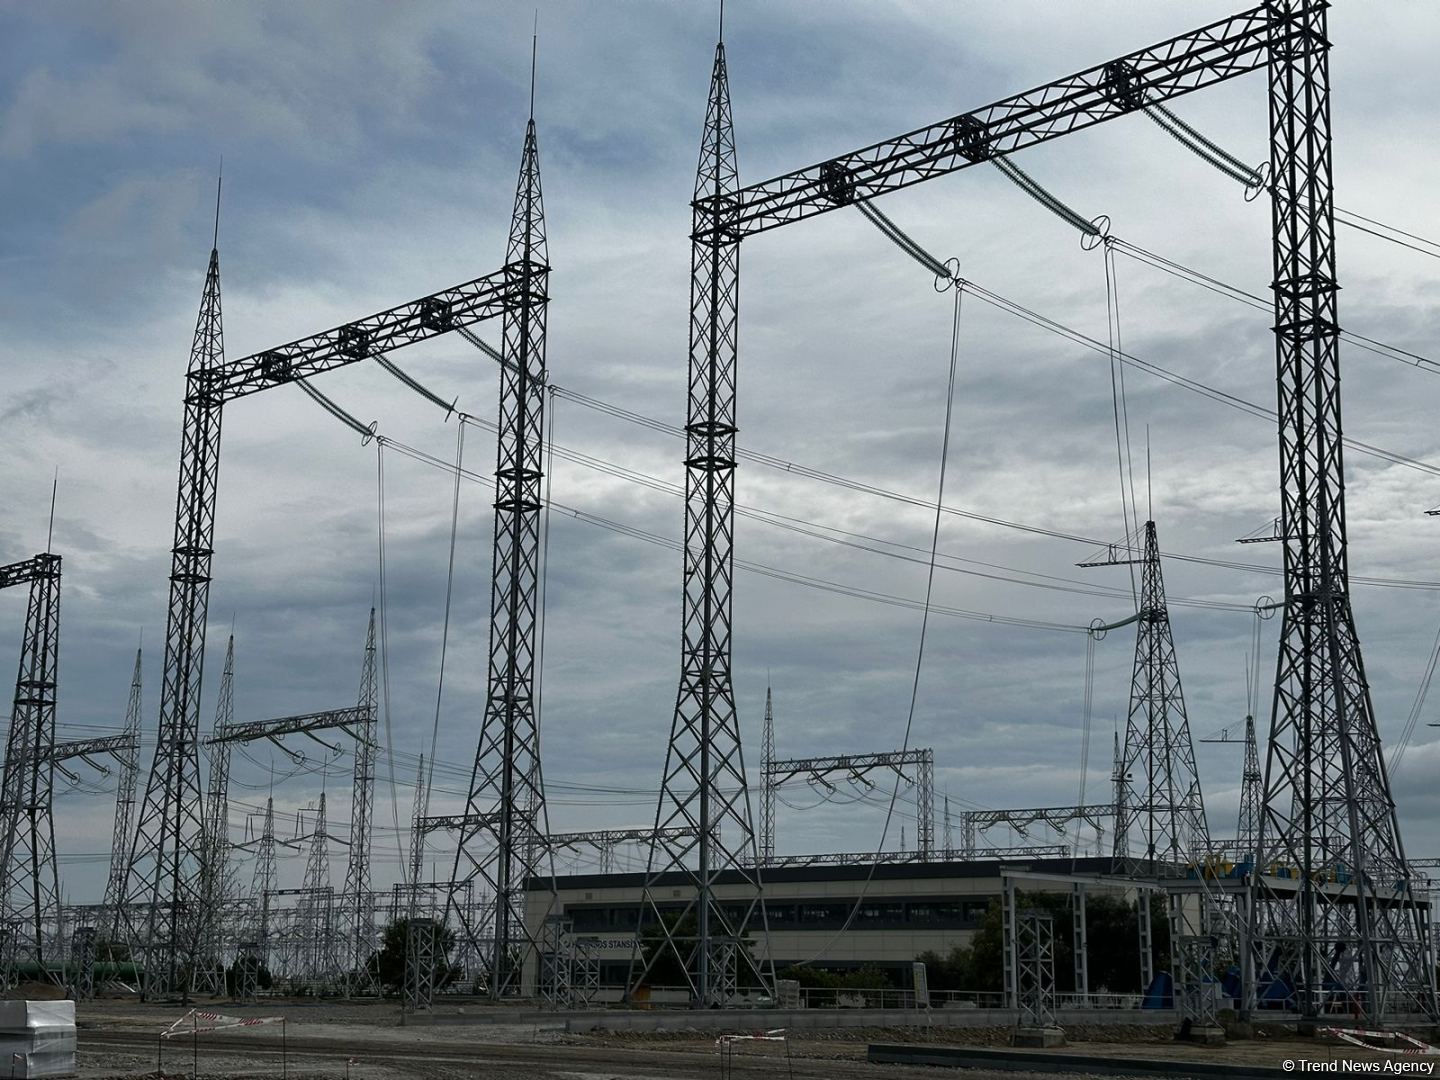 Mingəçevirdə inşa edilən yeni elektrik stansiyasında görülən işlər açıqlanıb (FOTO)